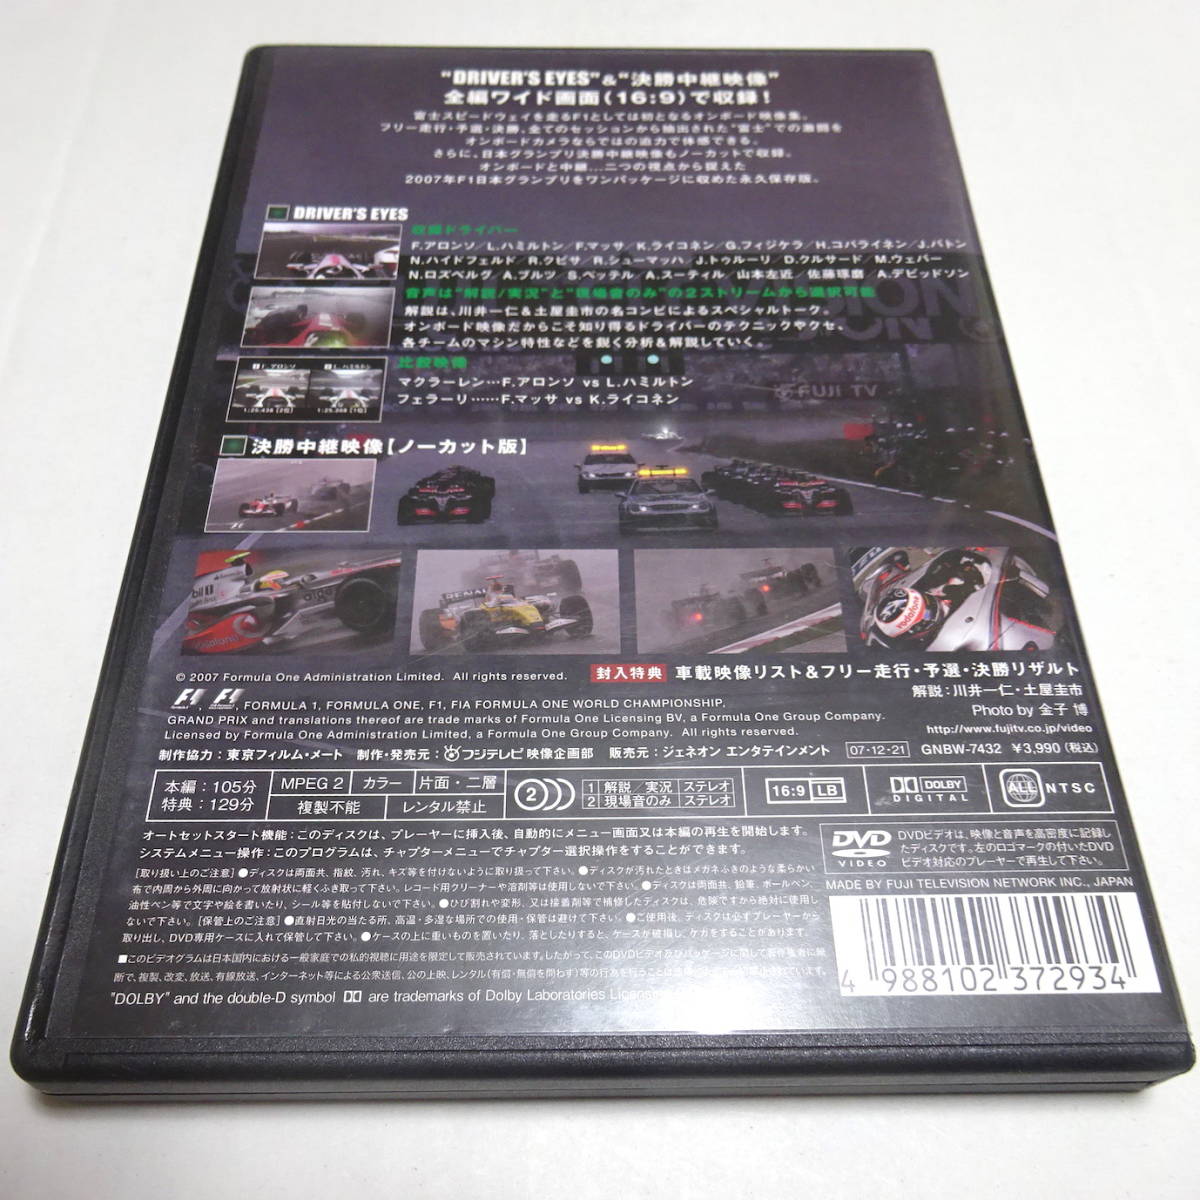 中古DVD/セル「Driver's Eyes F1日本グランプリ2007 富士」_画像2